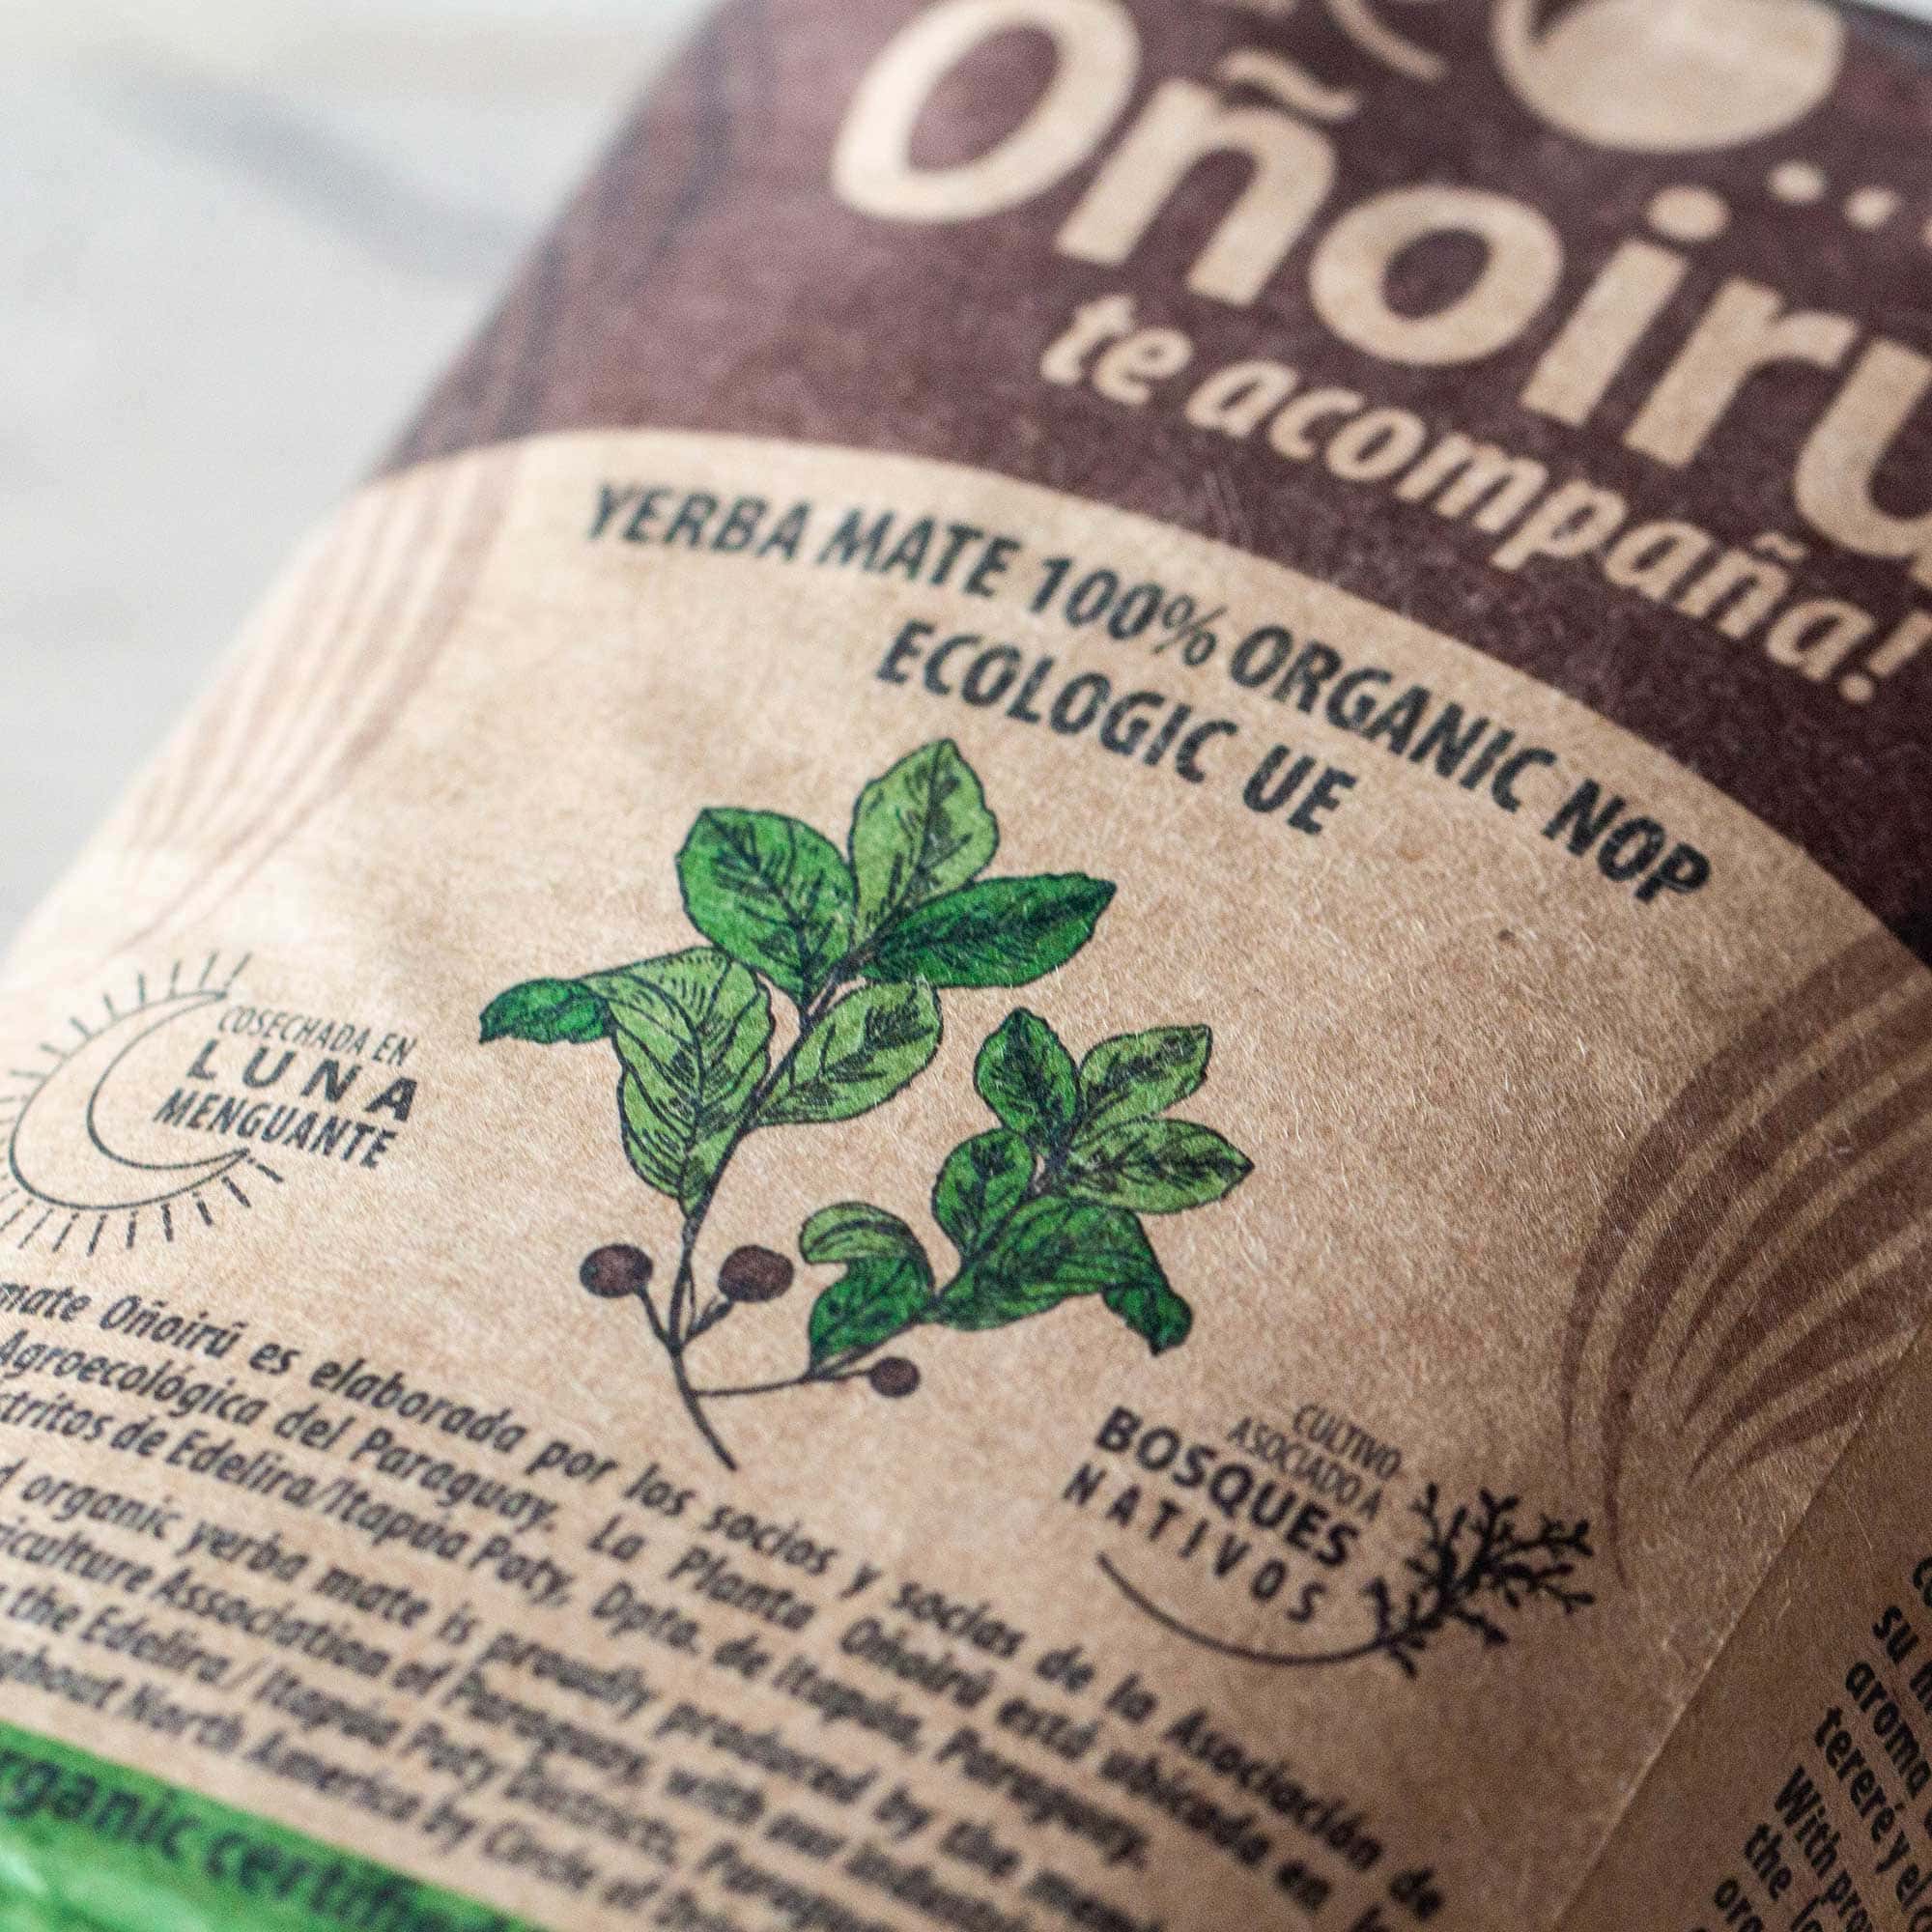 Yerba Mate Green Organic g Native Leaf Brazil Gourmet Bio leaves